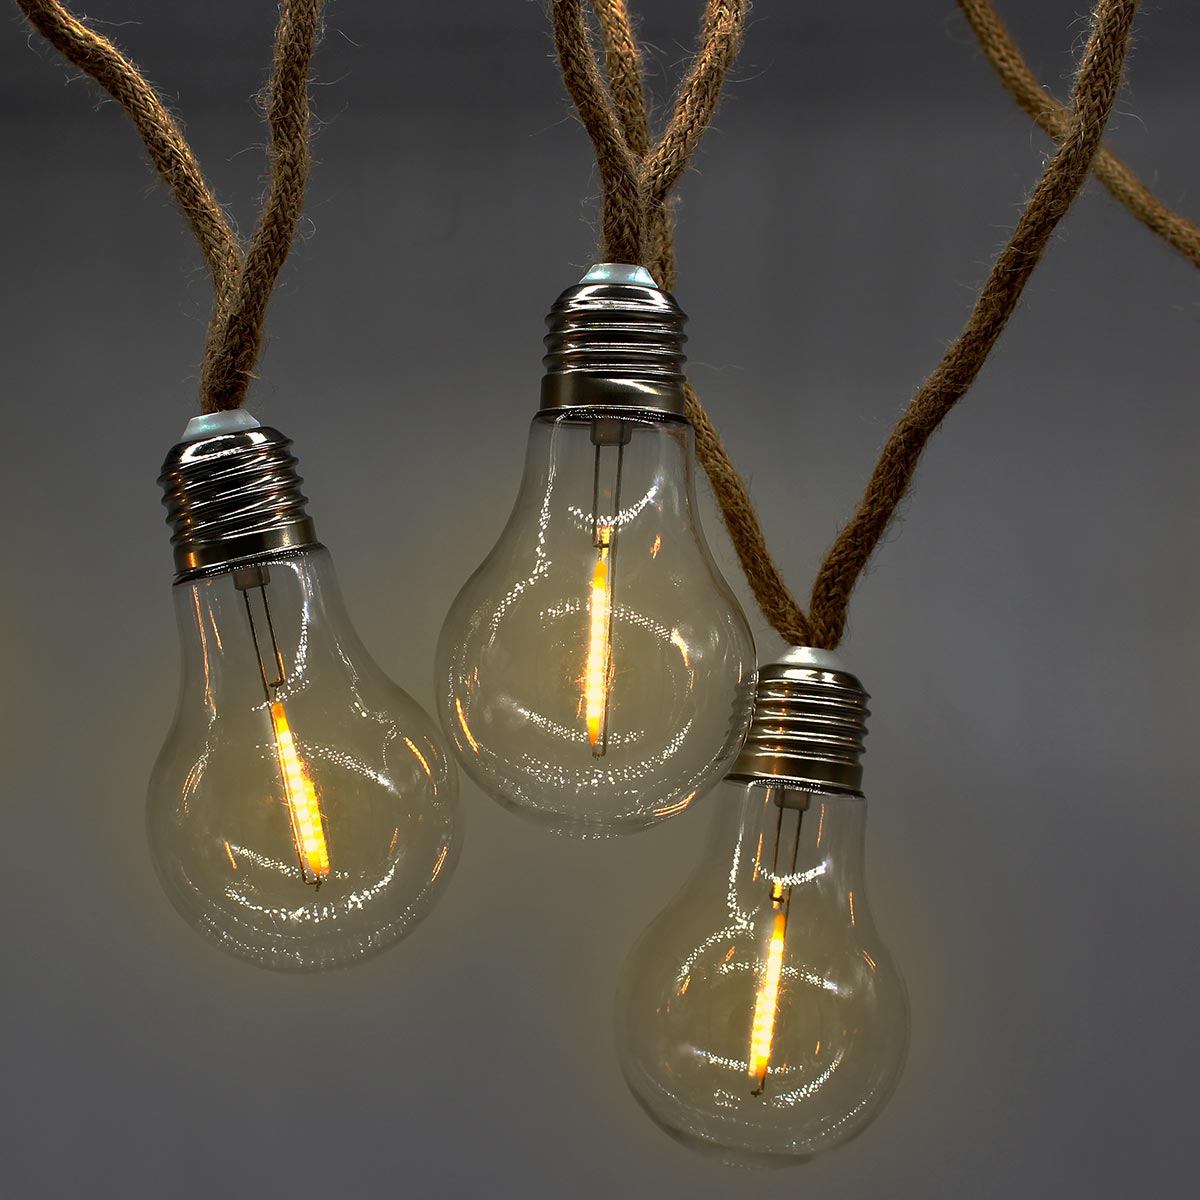 Guirlande lumineuse 10 LED ampoules et corde L190